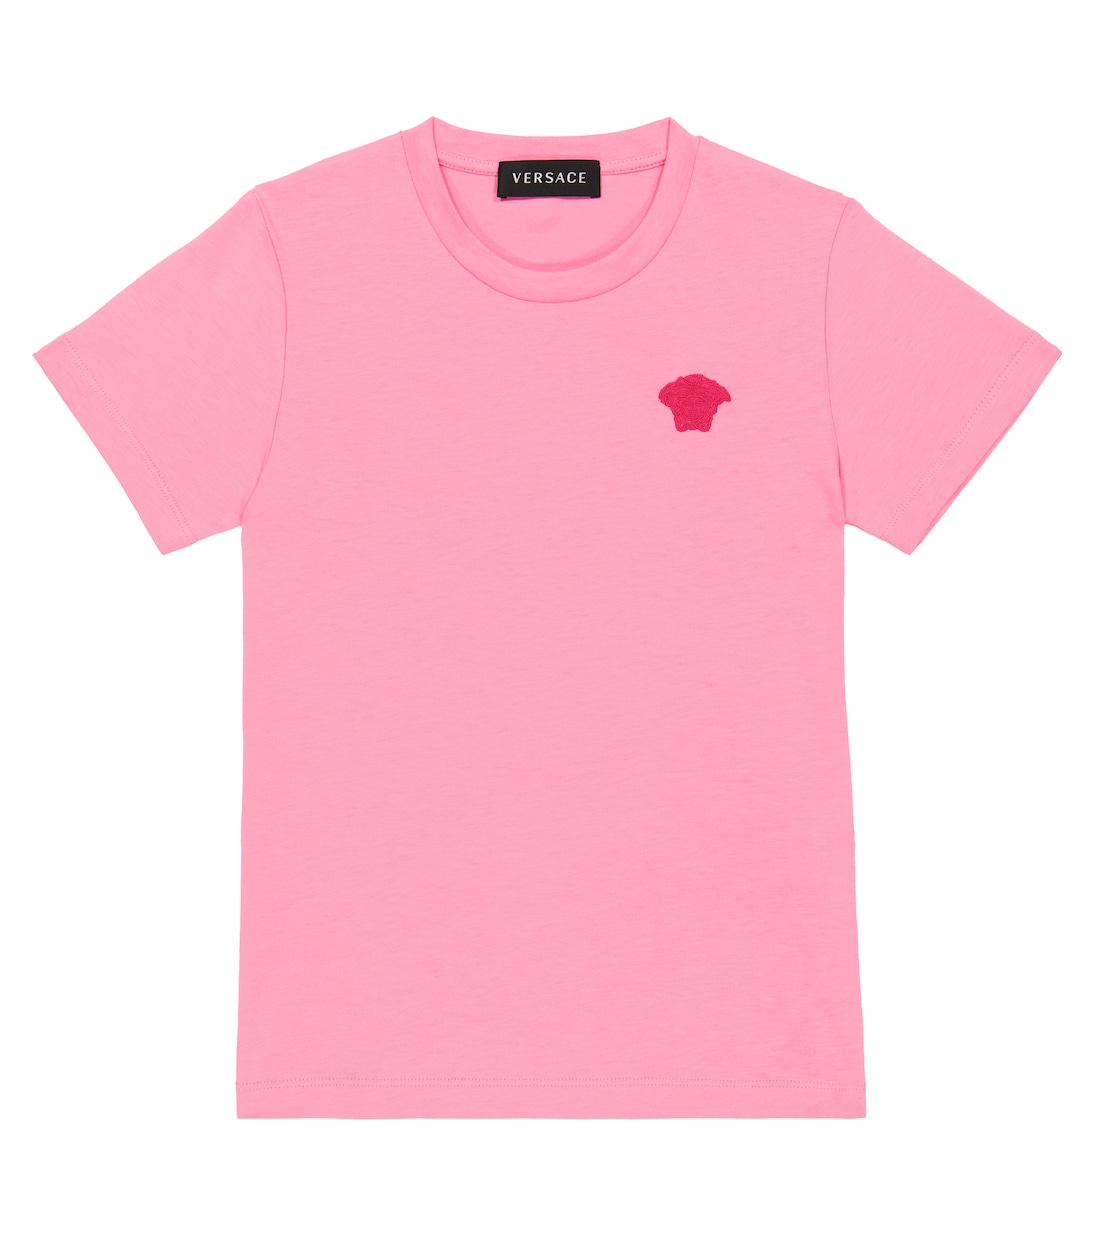 Футболка из хлопкового джерси с вышивкой Versace, розовый футболка tangie из хлопкового джерси стрейч с овальной вышивкой d diesel цвет a100